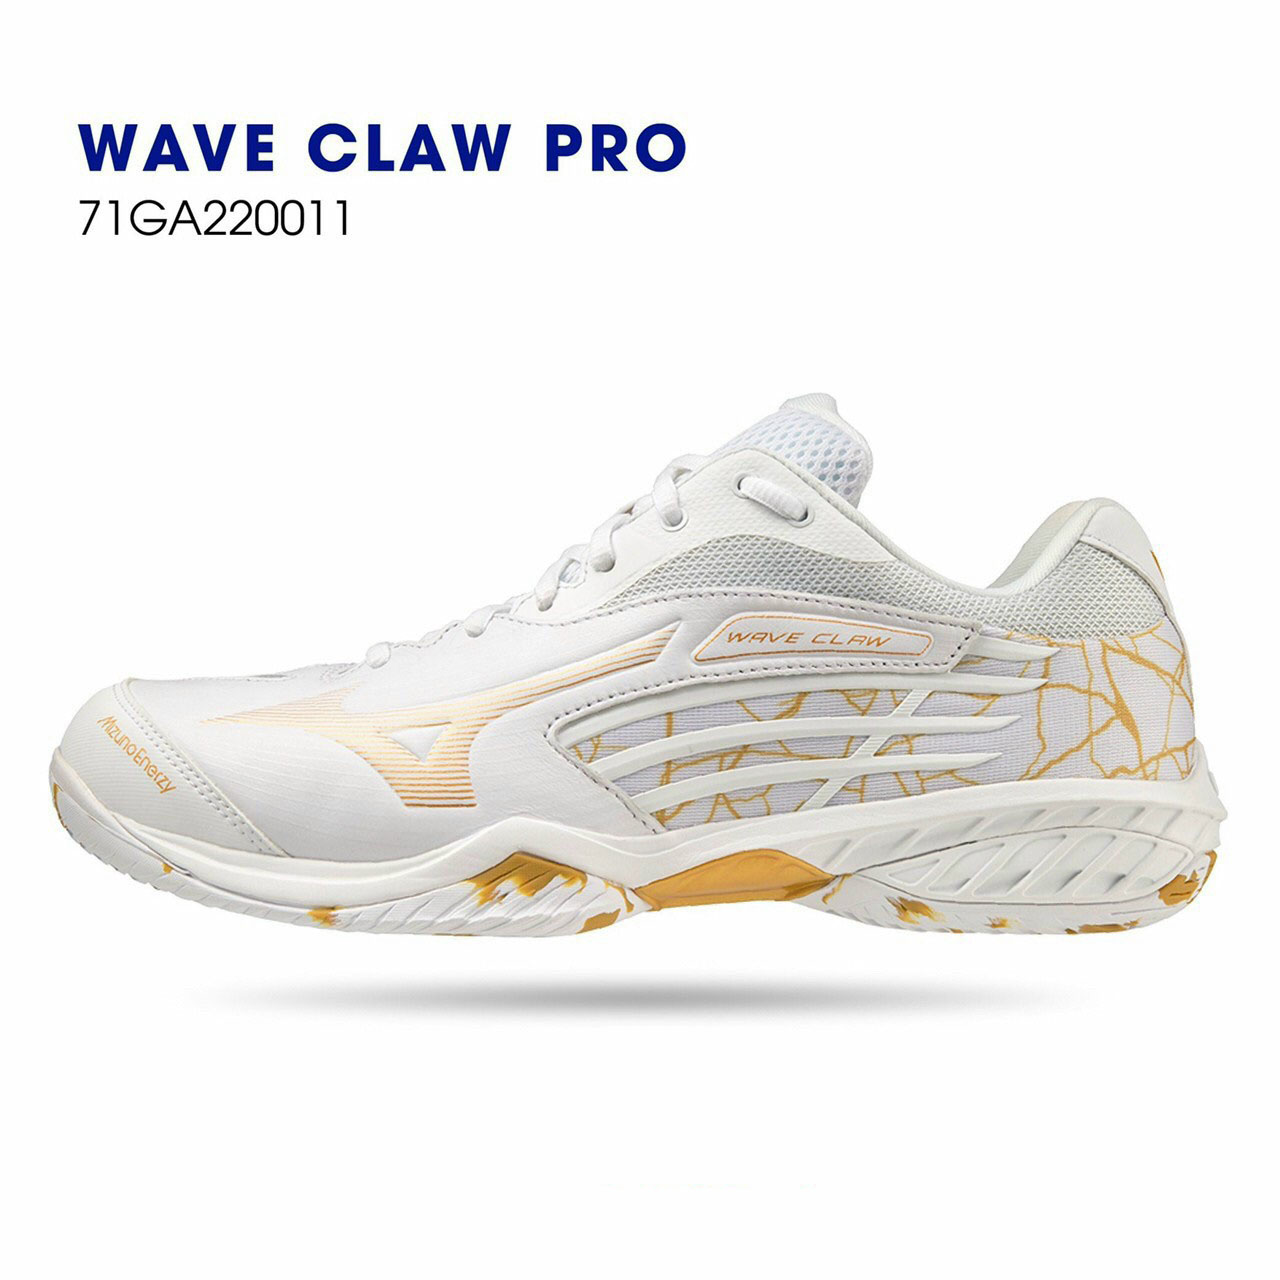 Giày cầu lông Mizuno chính hãng Wave Claw Pro 71GA220011 mẫu mới cho cả